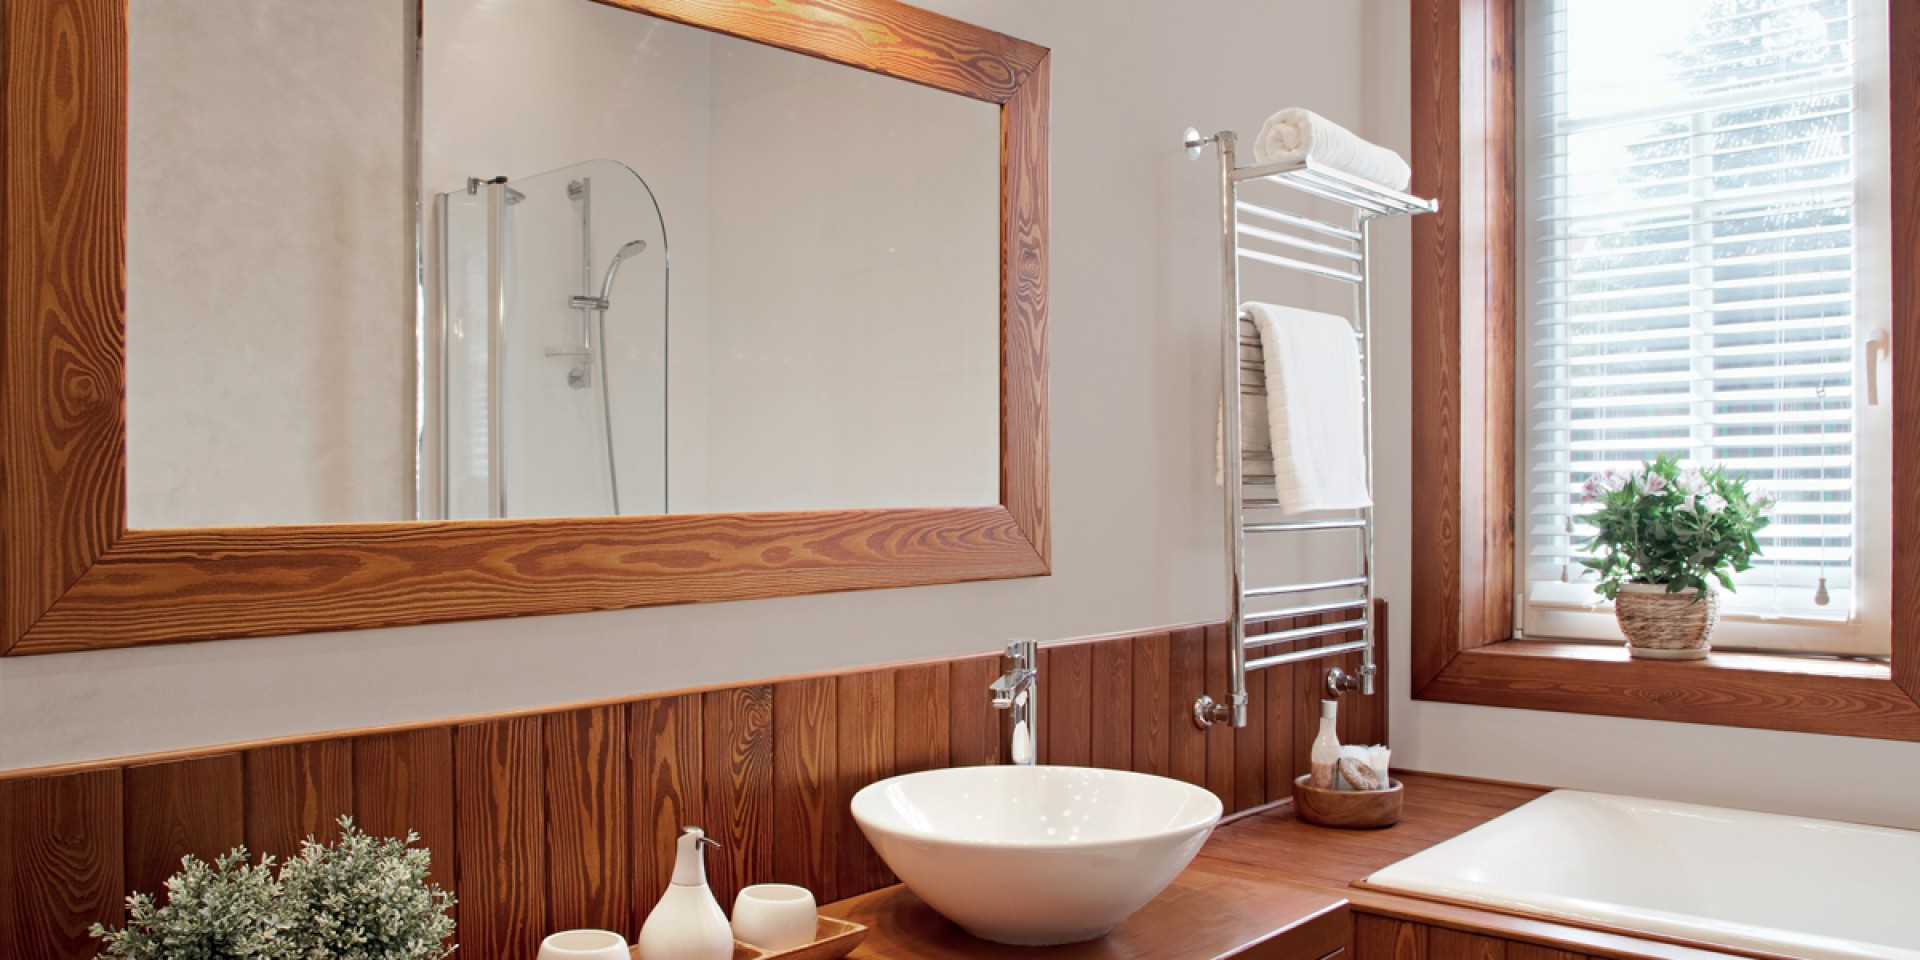 Inspiracja dla łazienki w jasnych kolorach z elementami z drewna